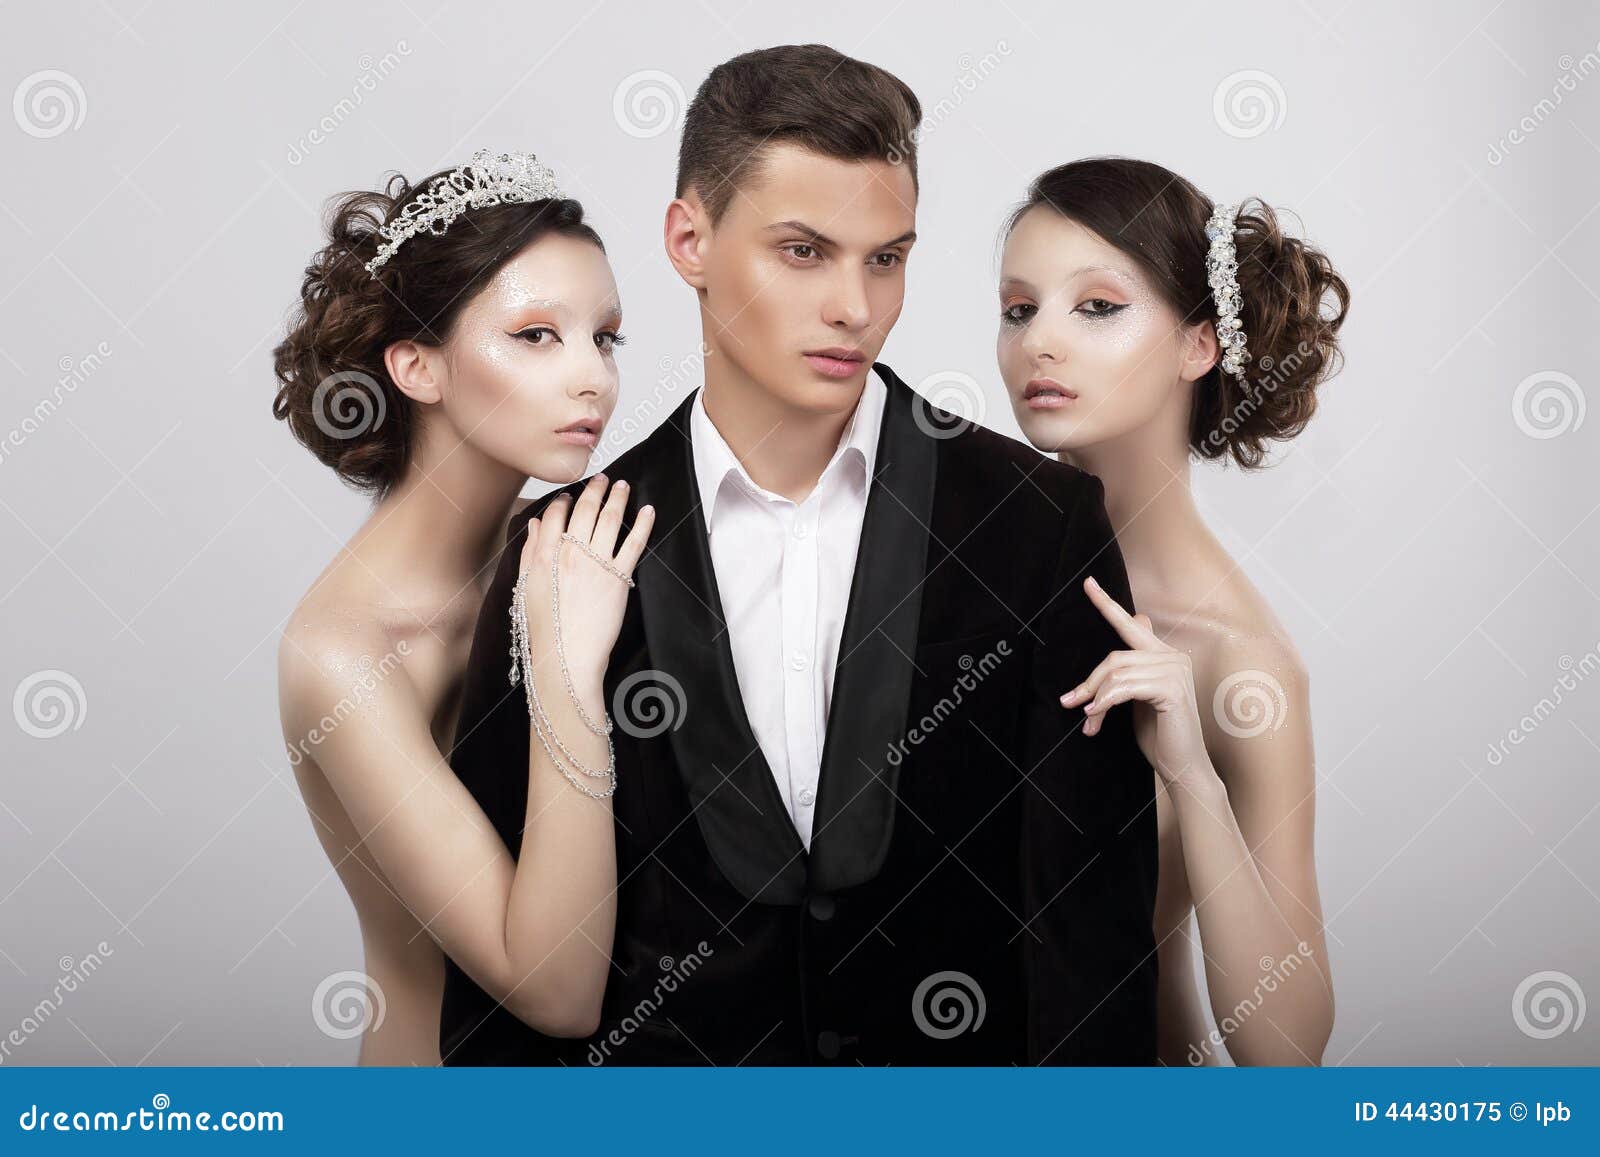 flirtation. handsome man in cuddle of two voluptuous women